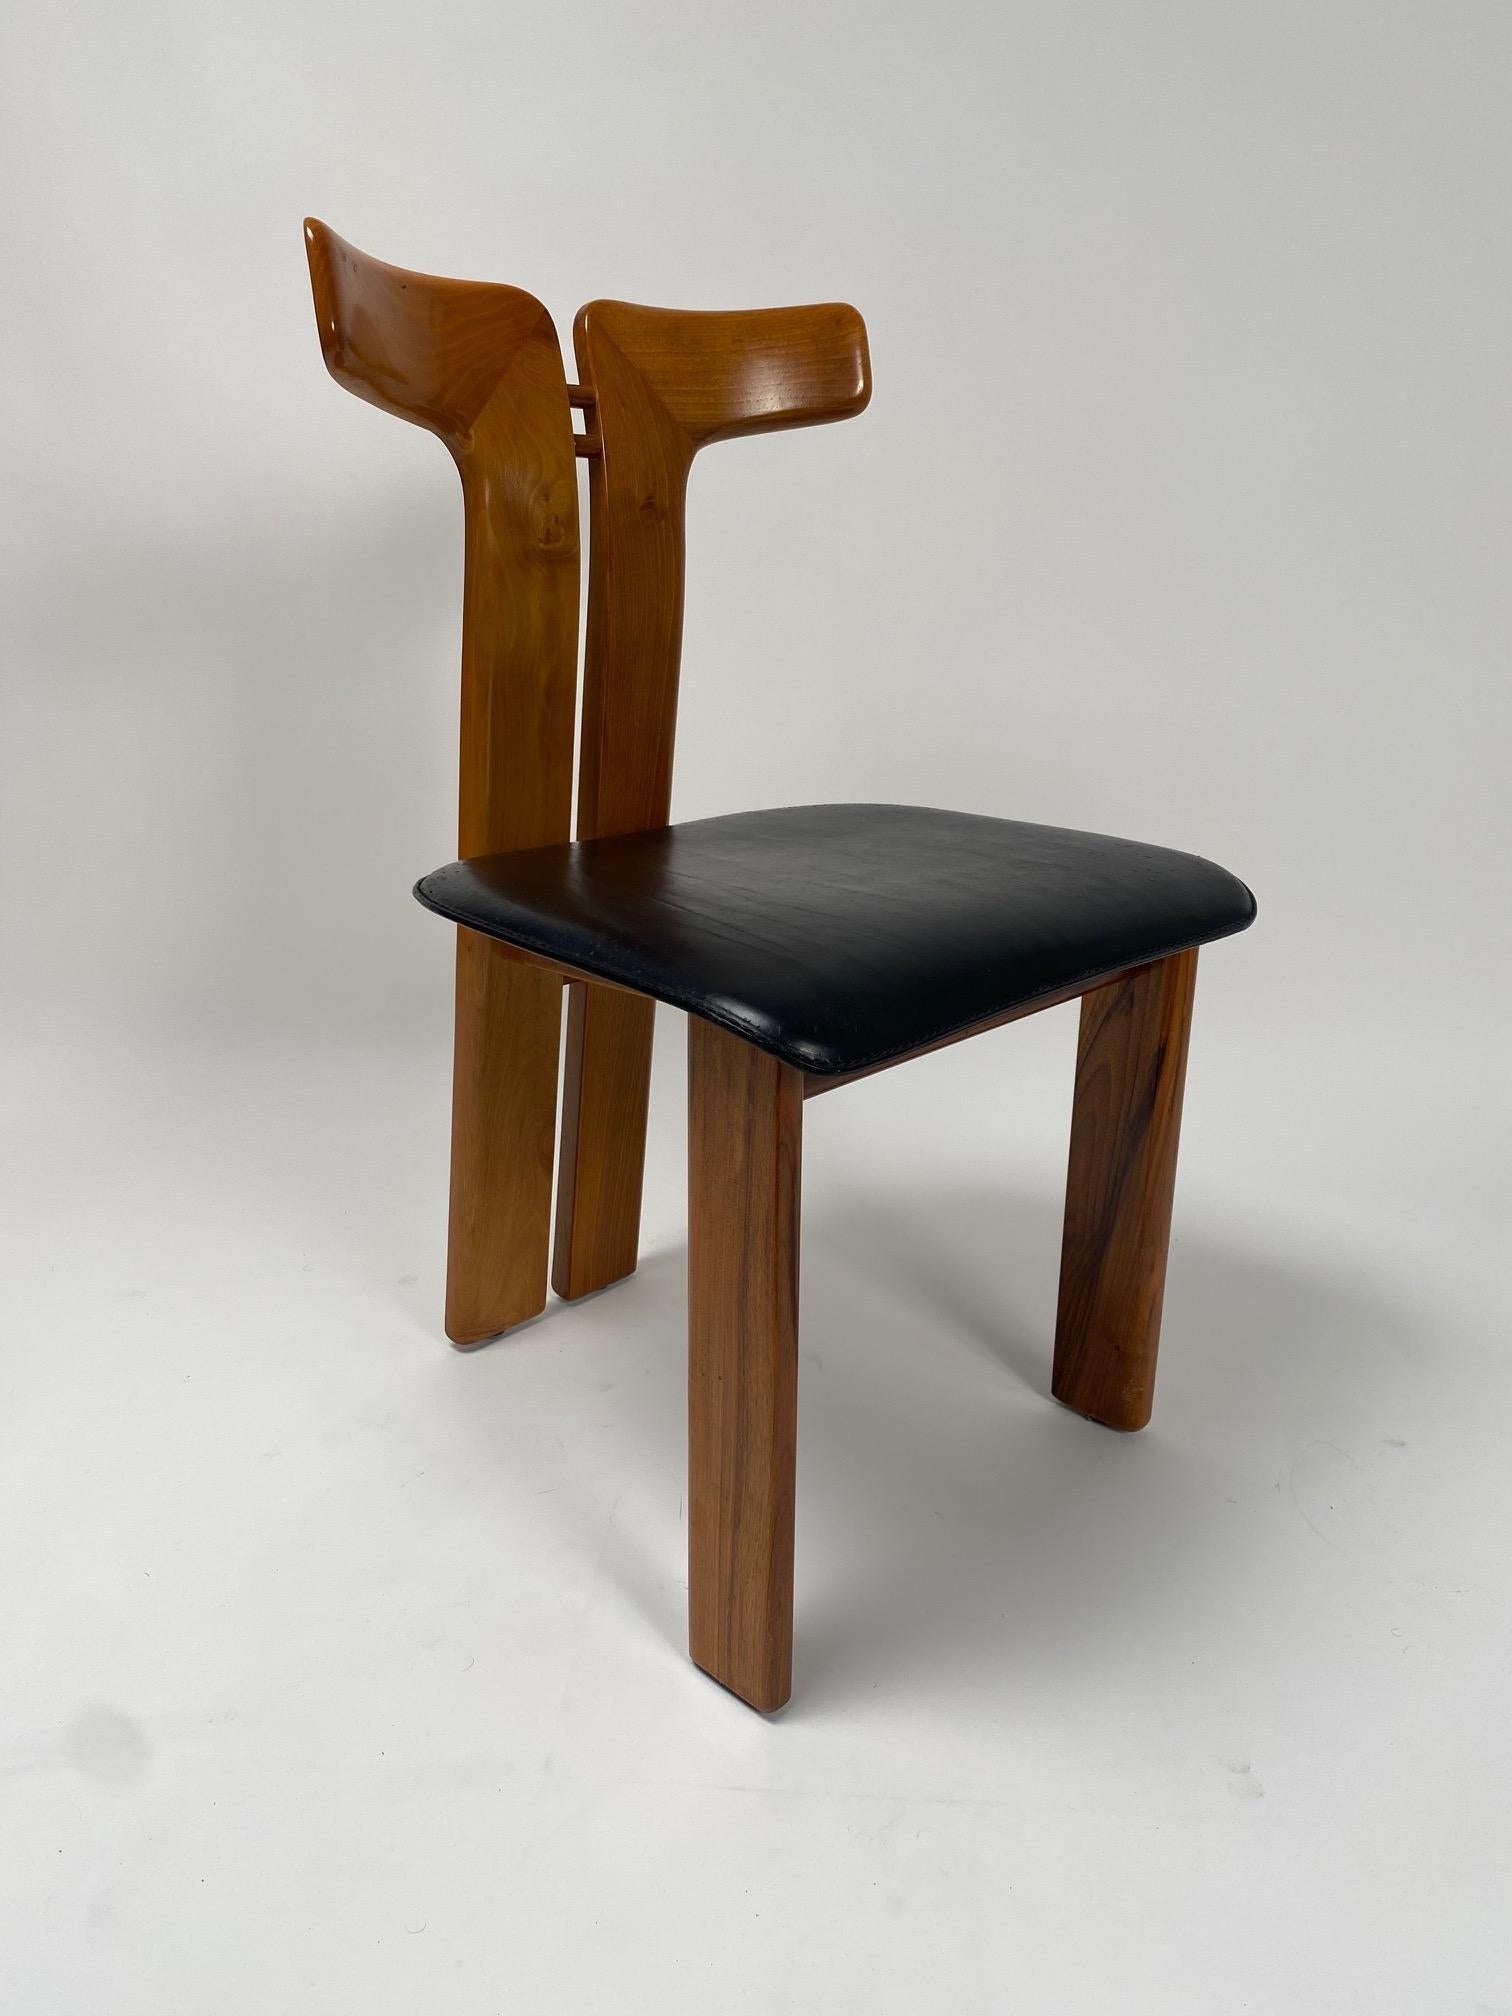 Pierre Cardin (1922-2020), Ensemble de six chaises de salle à manger en noyer et cuir, Italie, années 1970.

Quatre chaises rares réalisées par le célèbre designer français Pierre Cardin dans les années 70 pour une société italienne. Il s'agit d'un